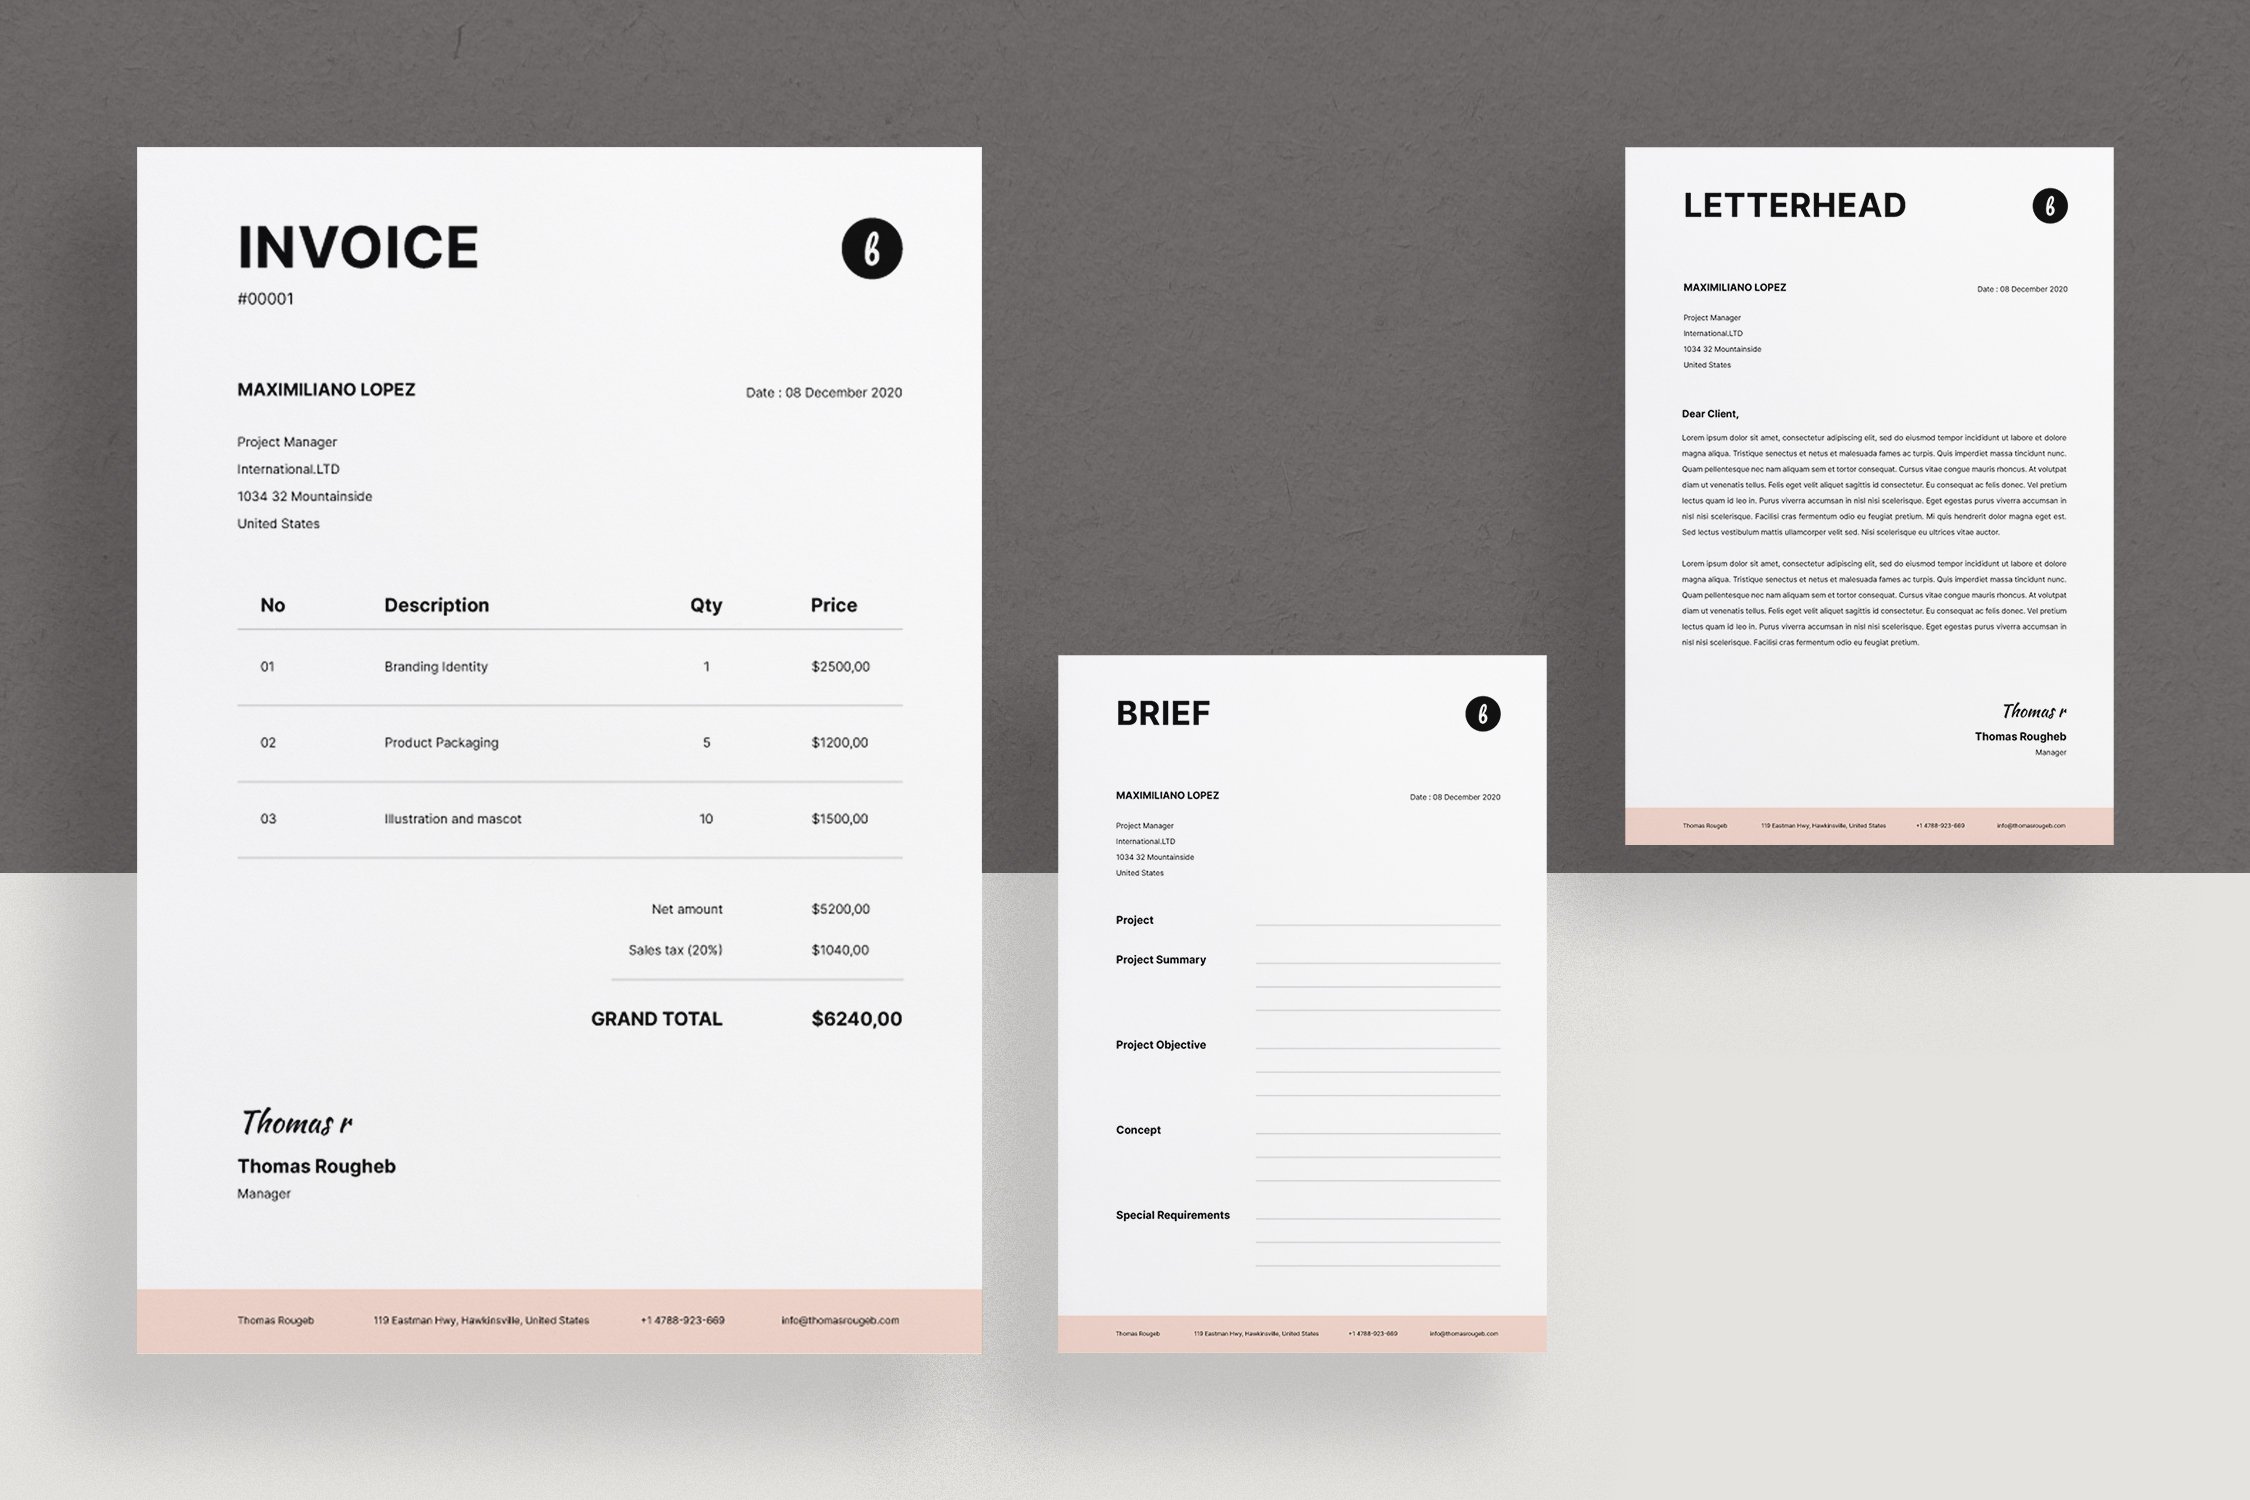 Invoice, Brief and Letterhead Design cover image.